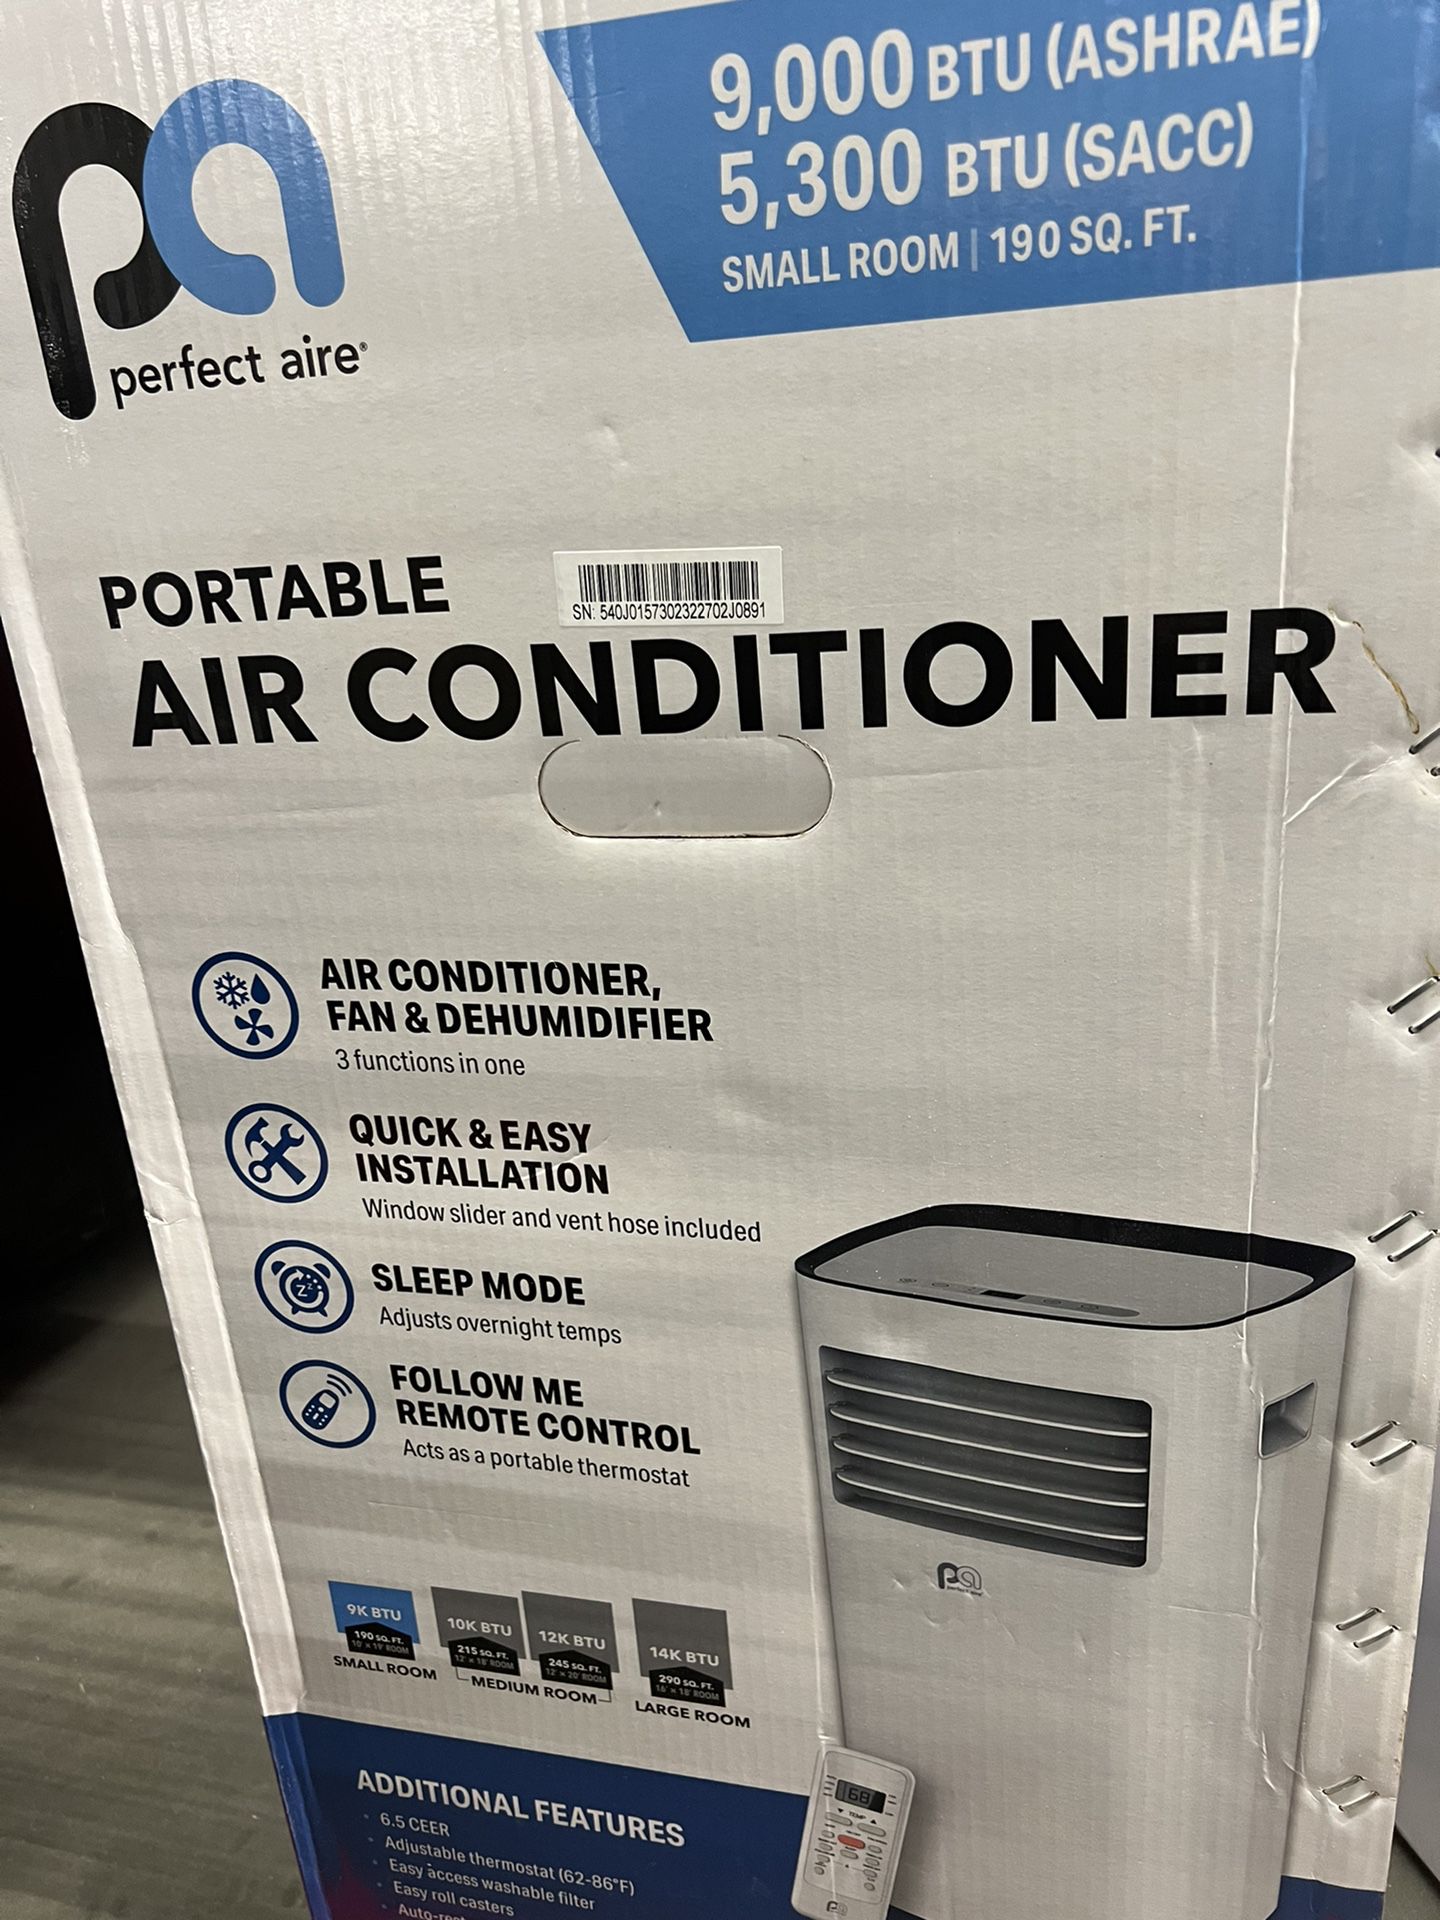 PORTABLE AIR CONDITIONER 